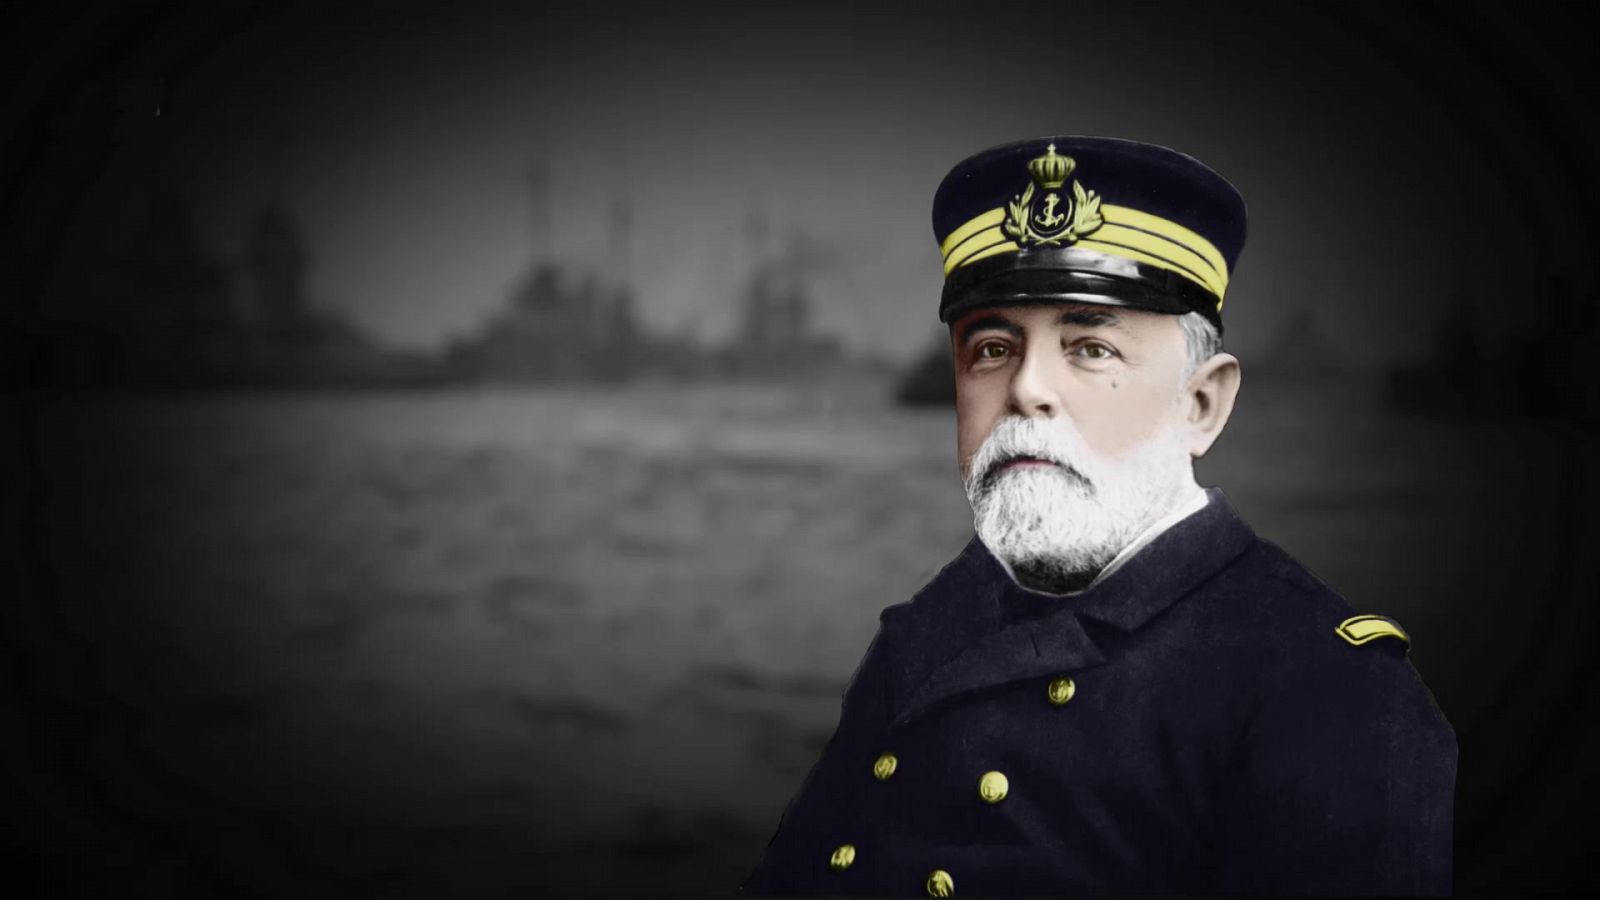 Somos documentales - Almirante Cervera, el último gran héroe - Documental en RTVE